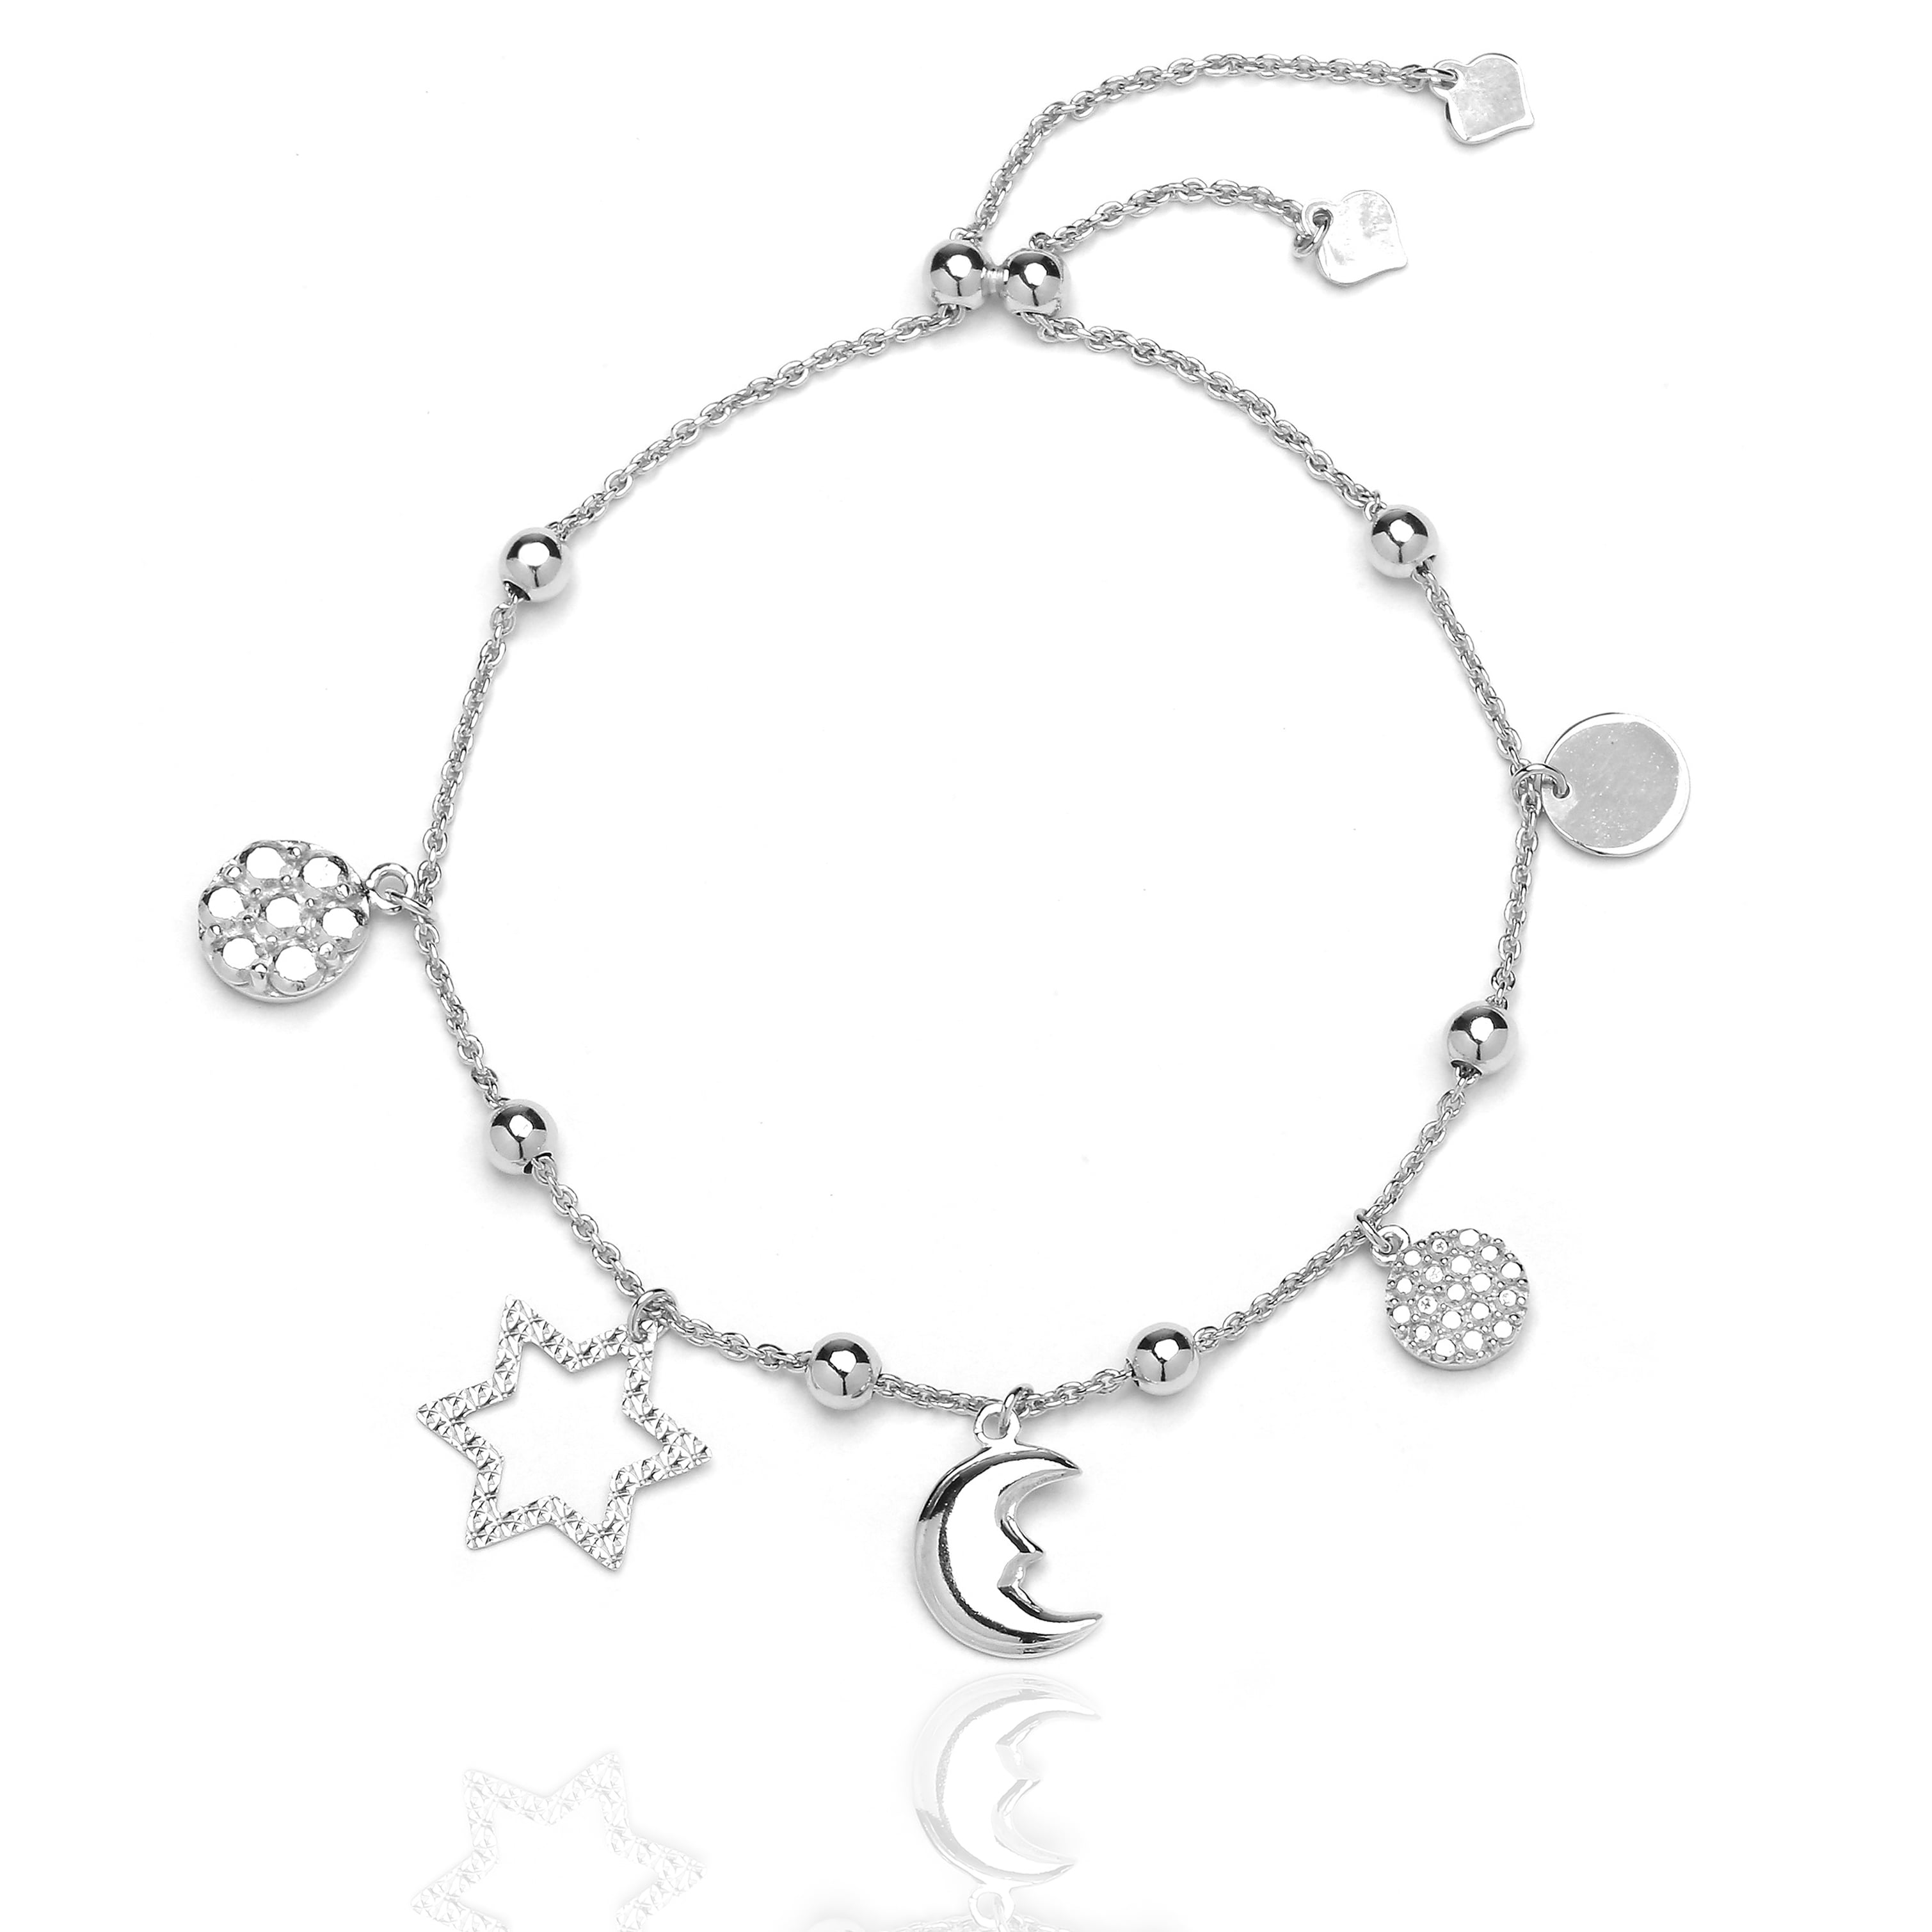 925 Silver Heart Love Star Moon Elegant Charm For Bracelet - Temu